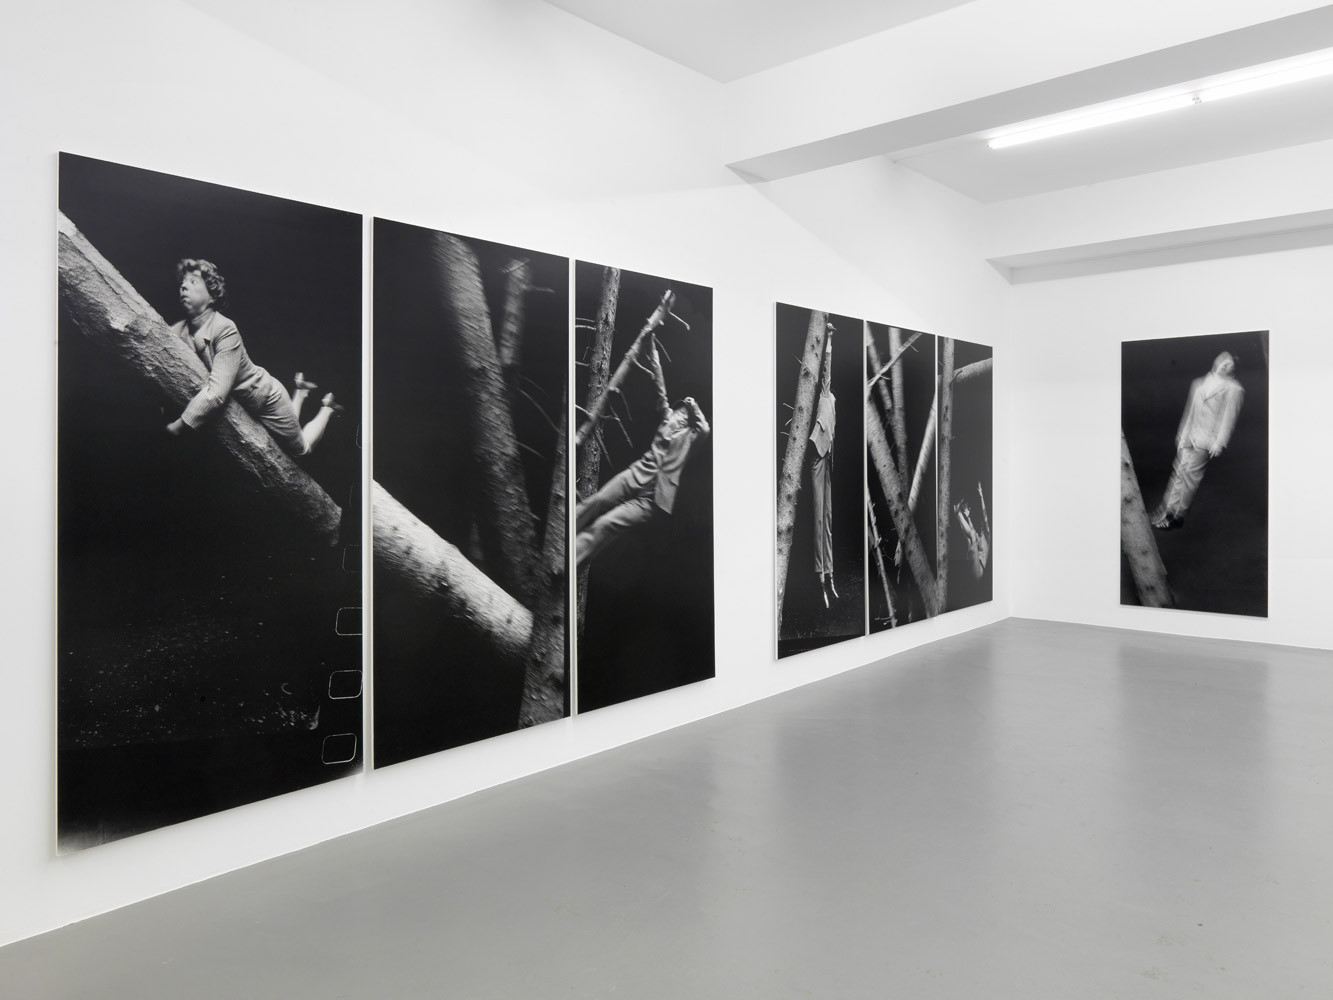 Anna & Bernhard Blume, ‘Im Wald’, Installation view, Buchmann Galerie, 2014